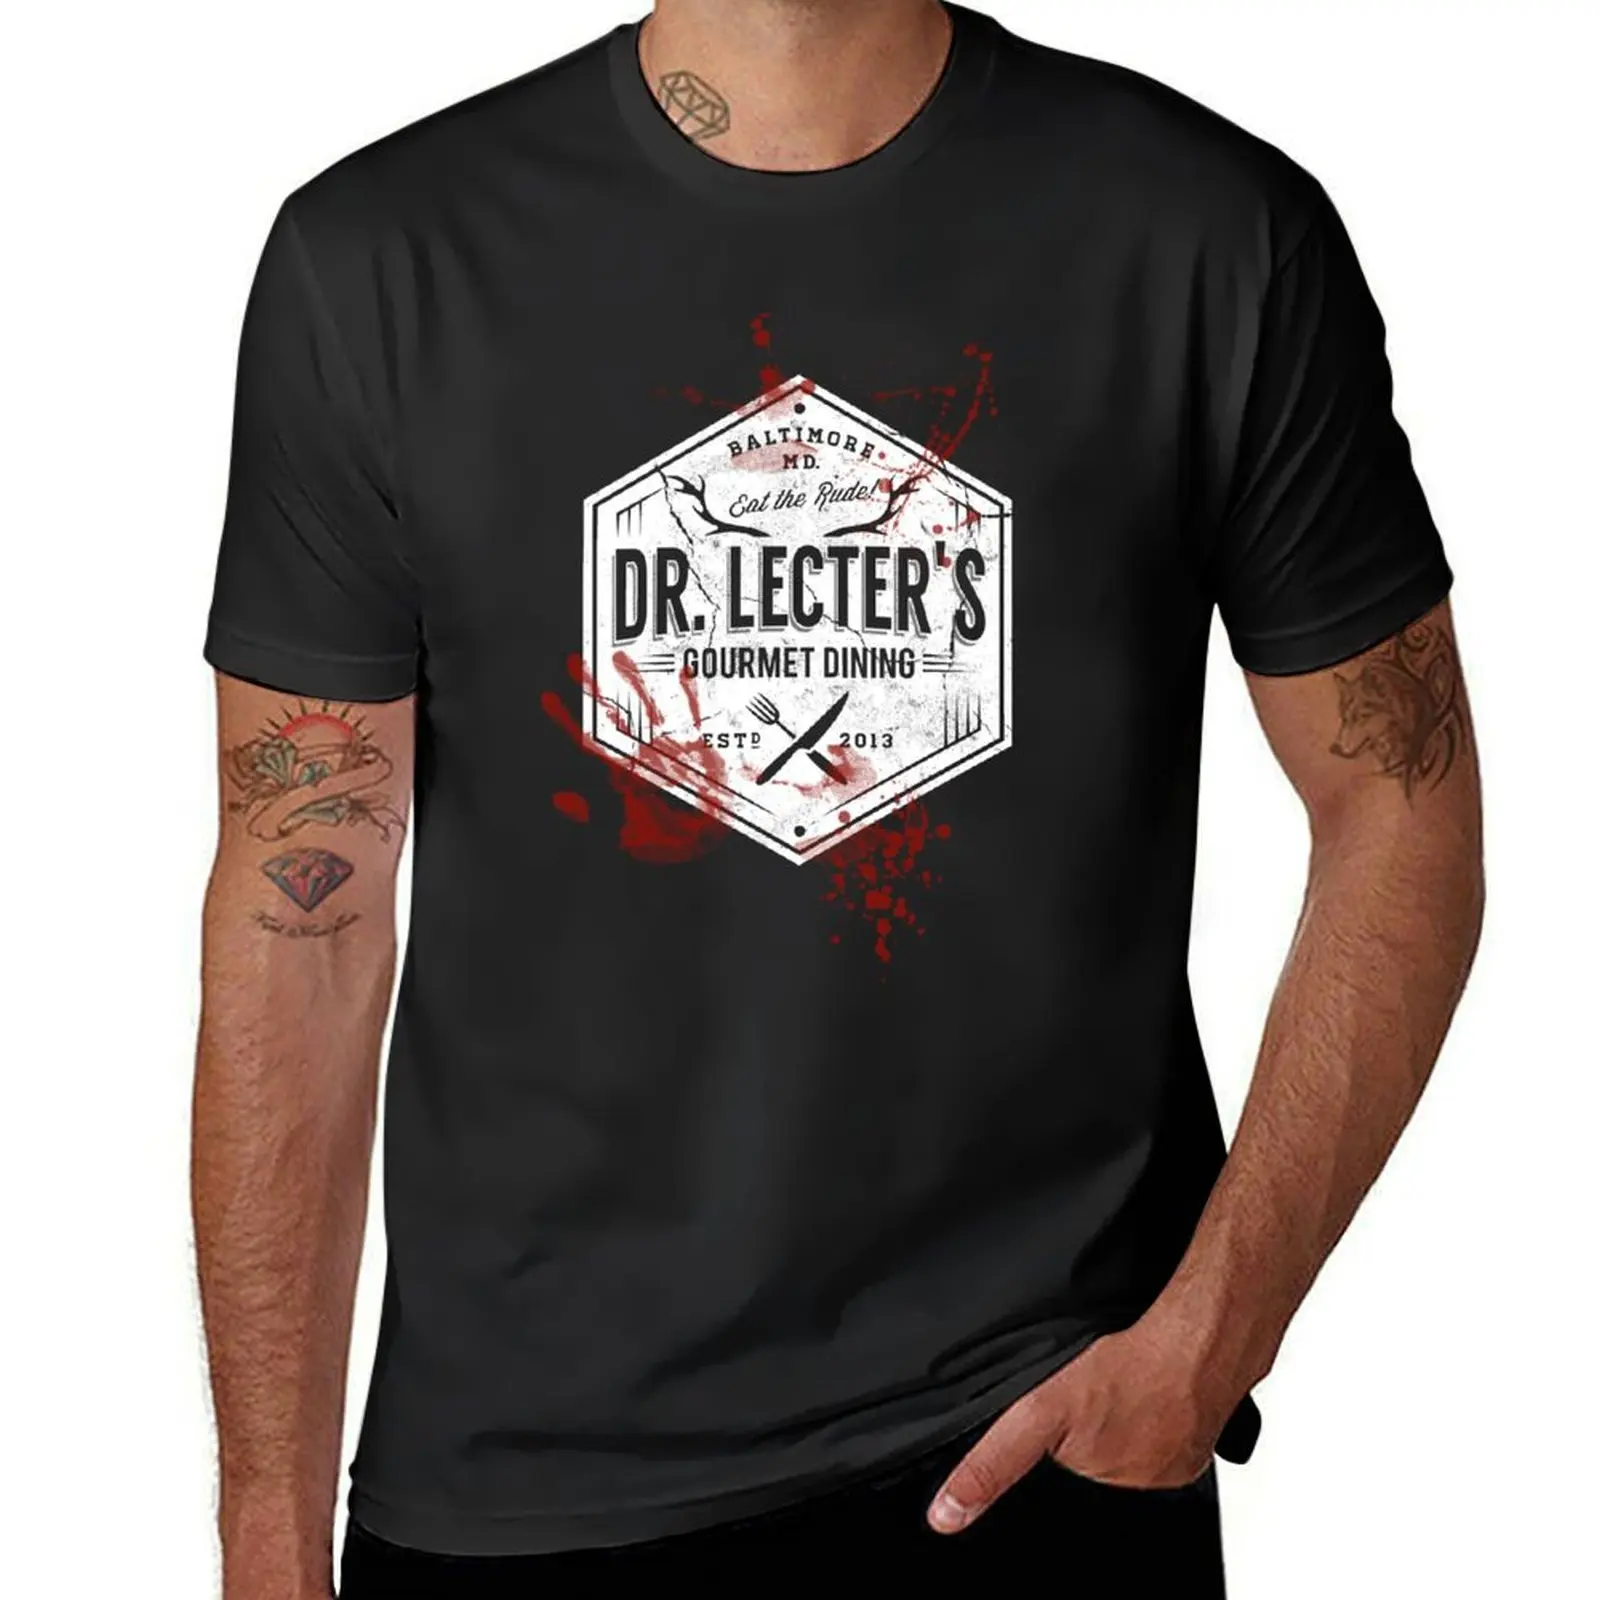 Мужская футболка с изображением гурмана Dr Lecter, белая футболка большого размера в стиле аниме